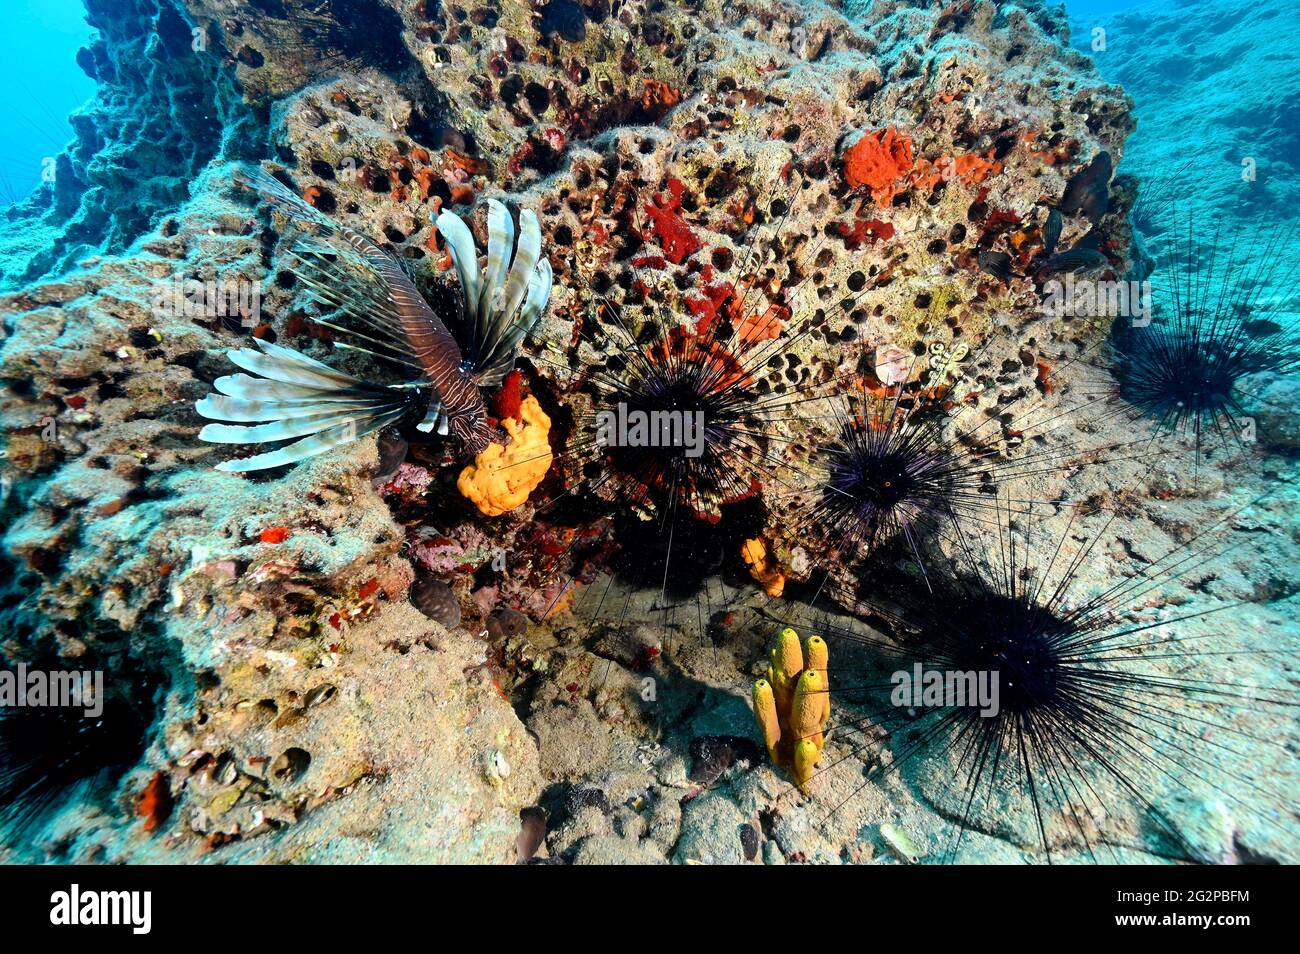 Lionfish invasif, Pterois Miles et long-colonne oursin, Diadema setosa, dans la zone marine protégée de la baie de Gokova, Marmaris Turquie Banque D'Images